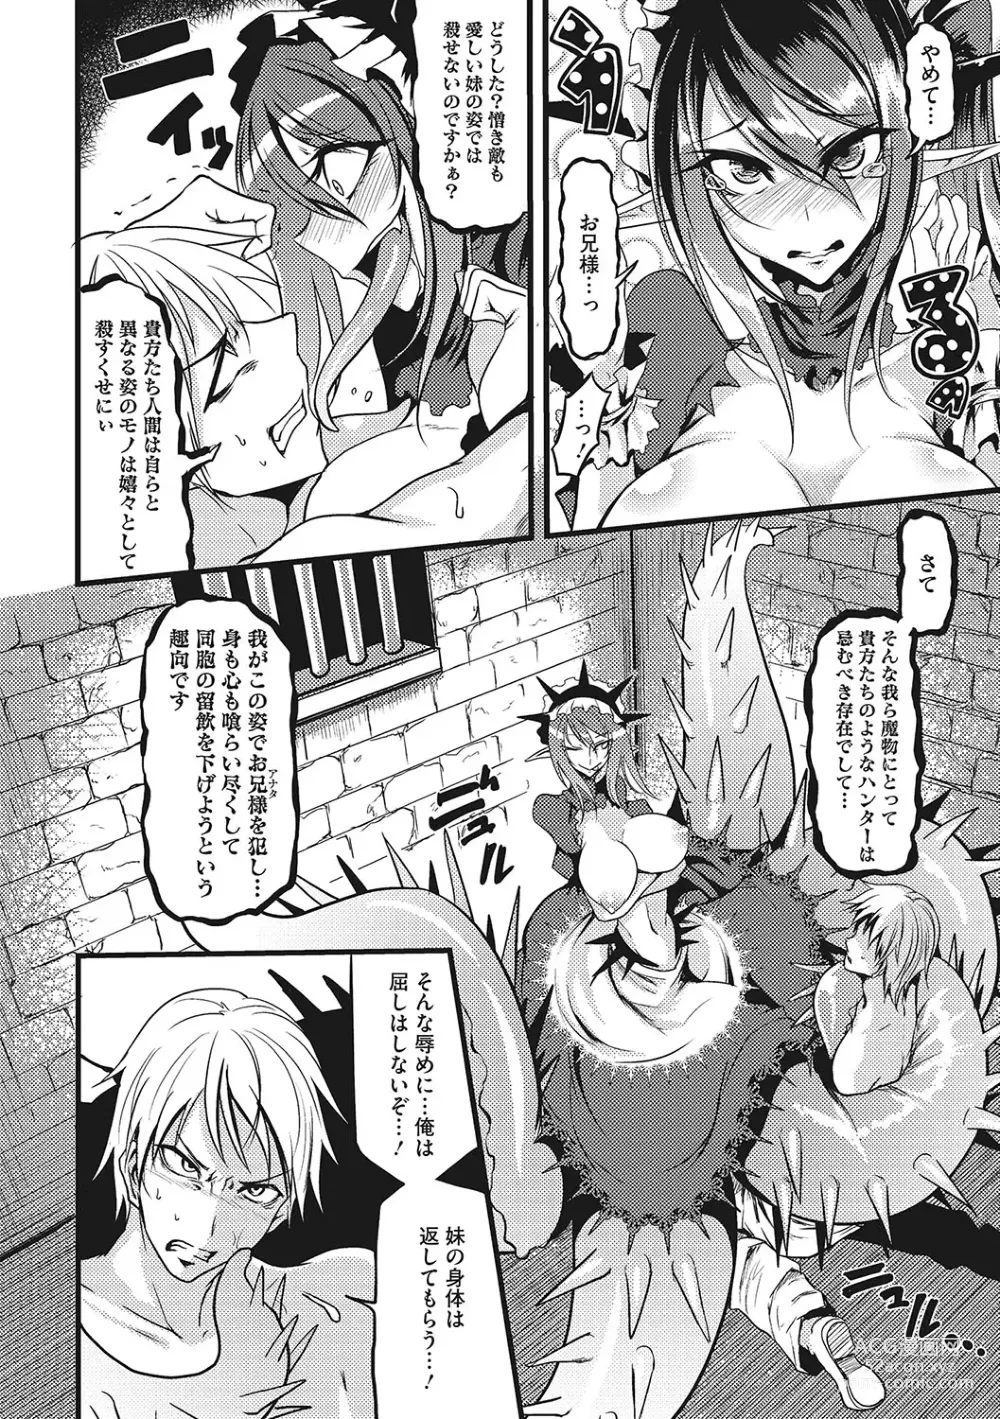 Page 275 of manga Sanpai Shoujo